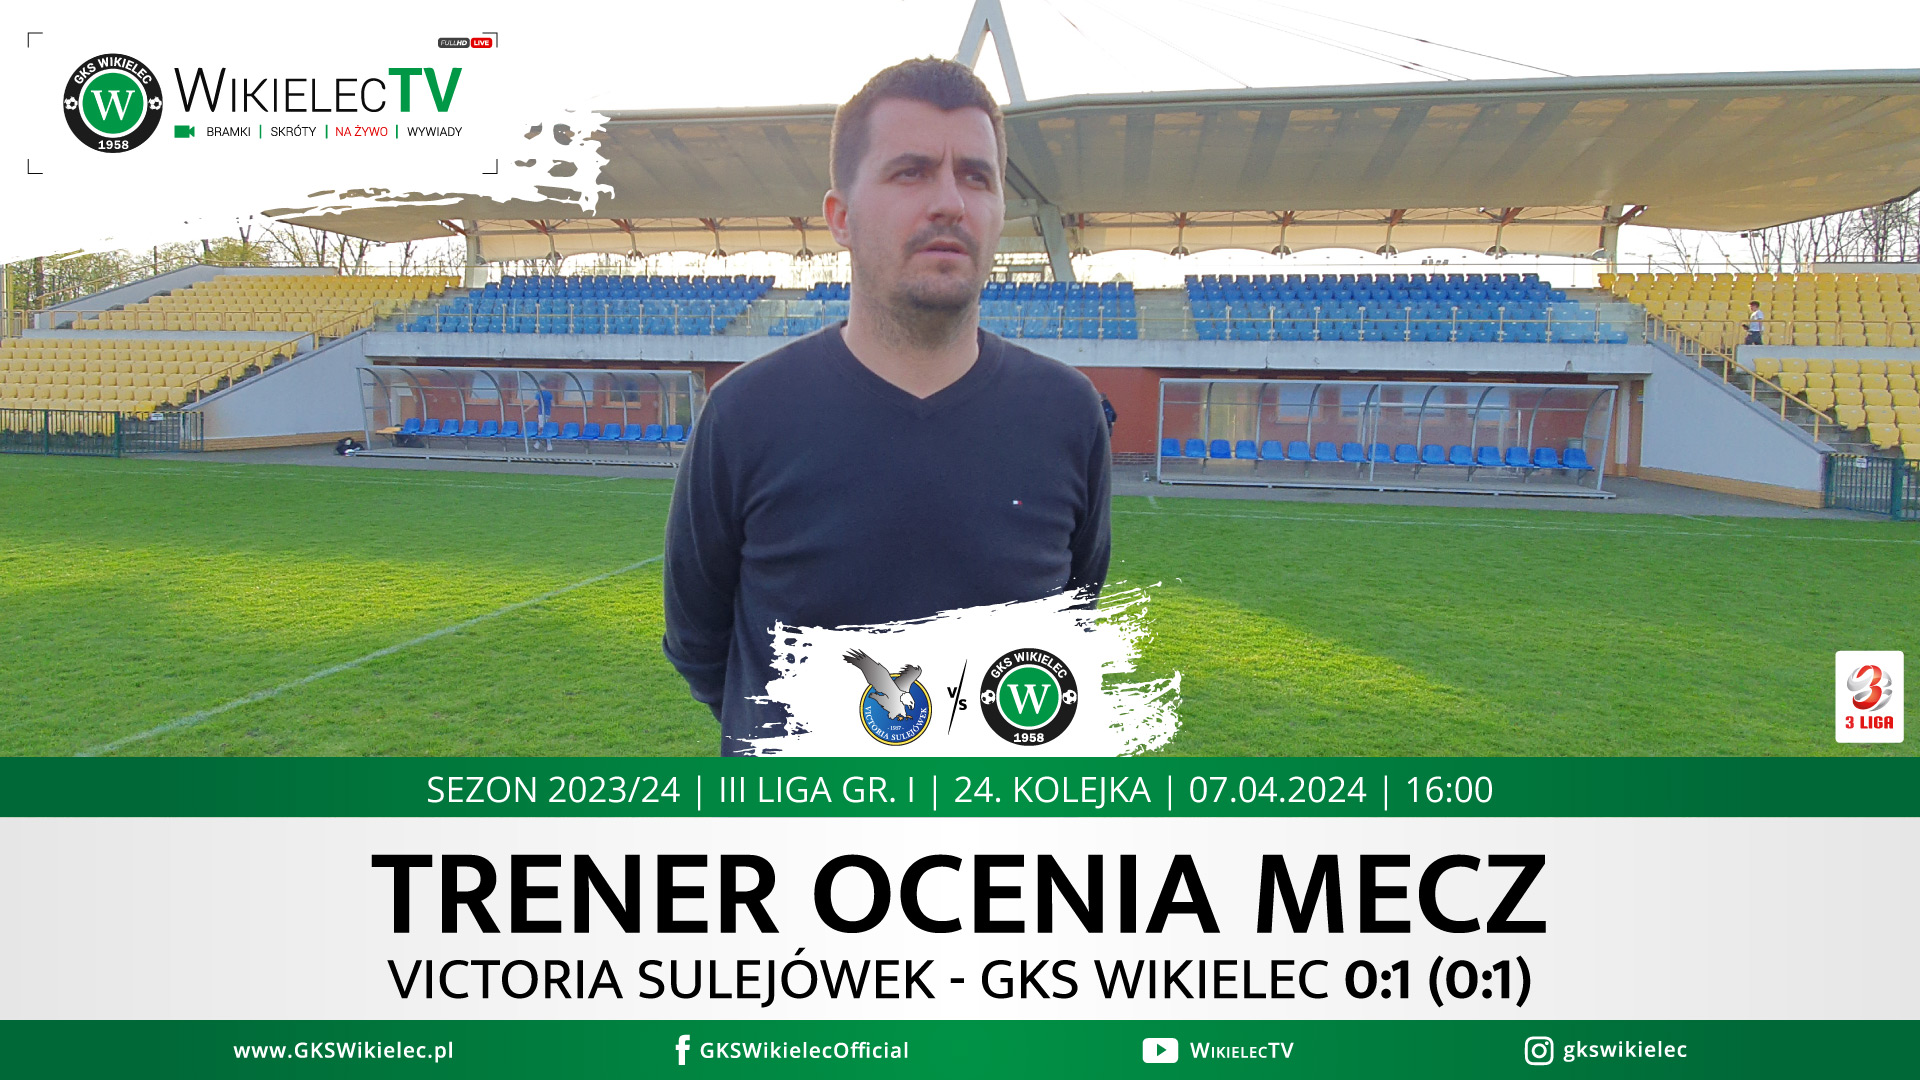 WikielecTV: Trener ocenia mecz z Victorią Sulejówek